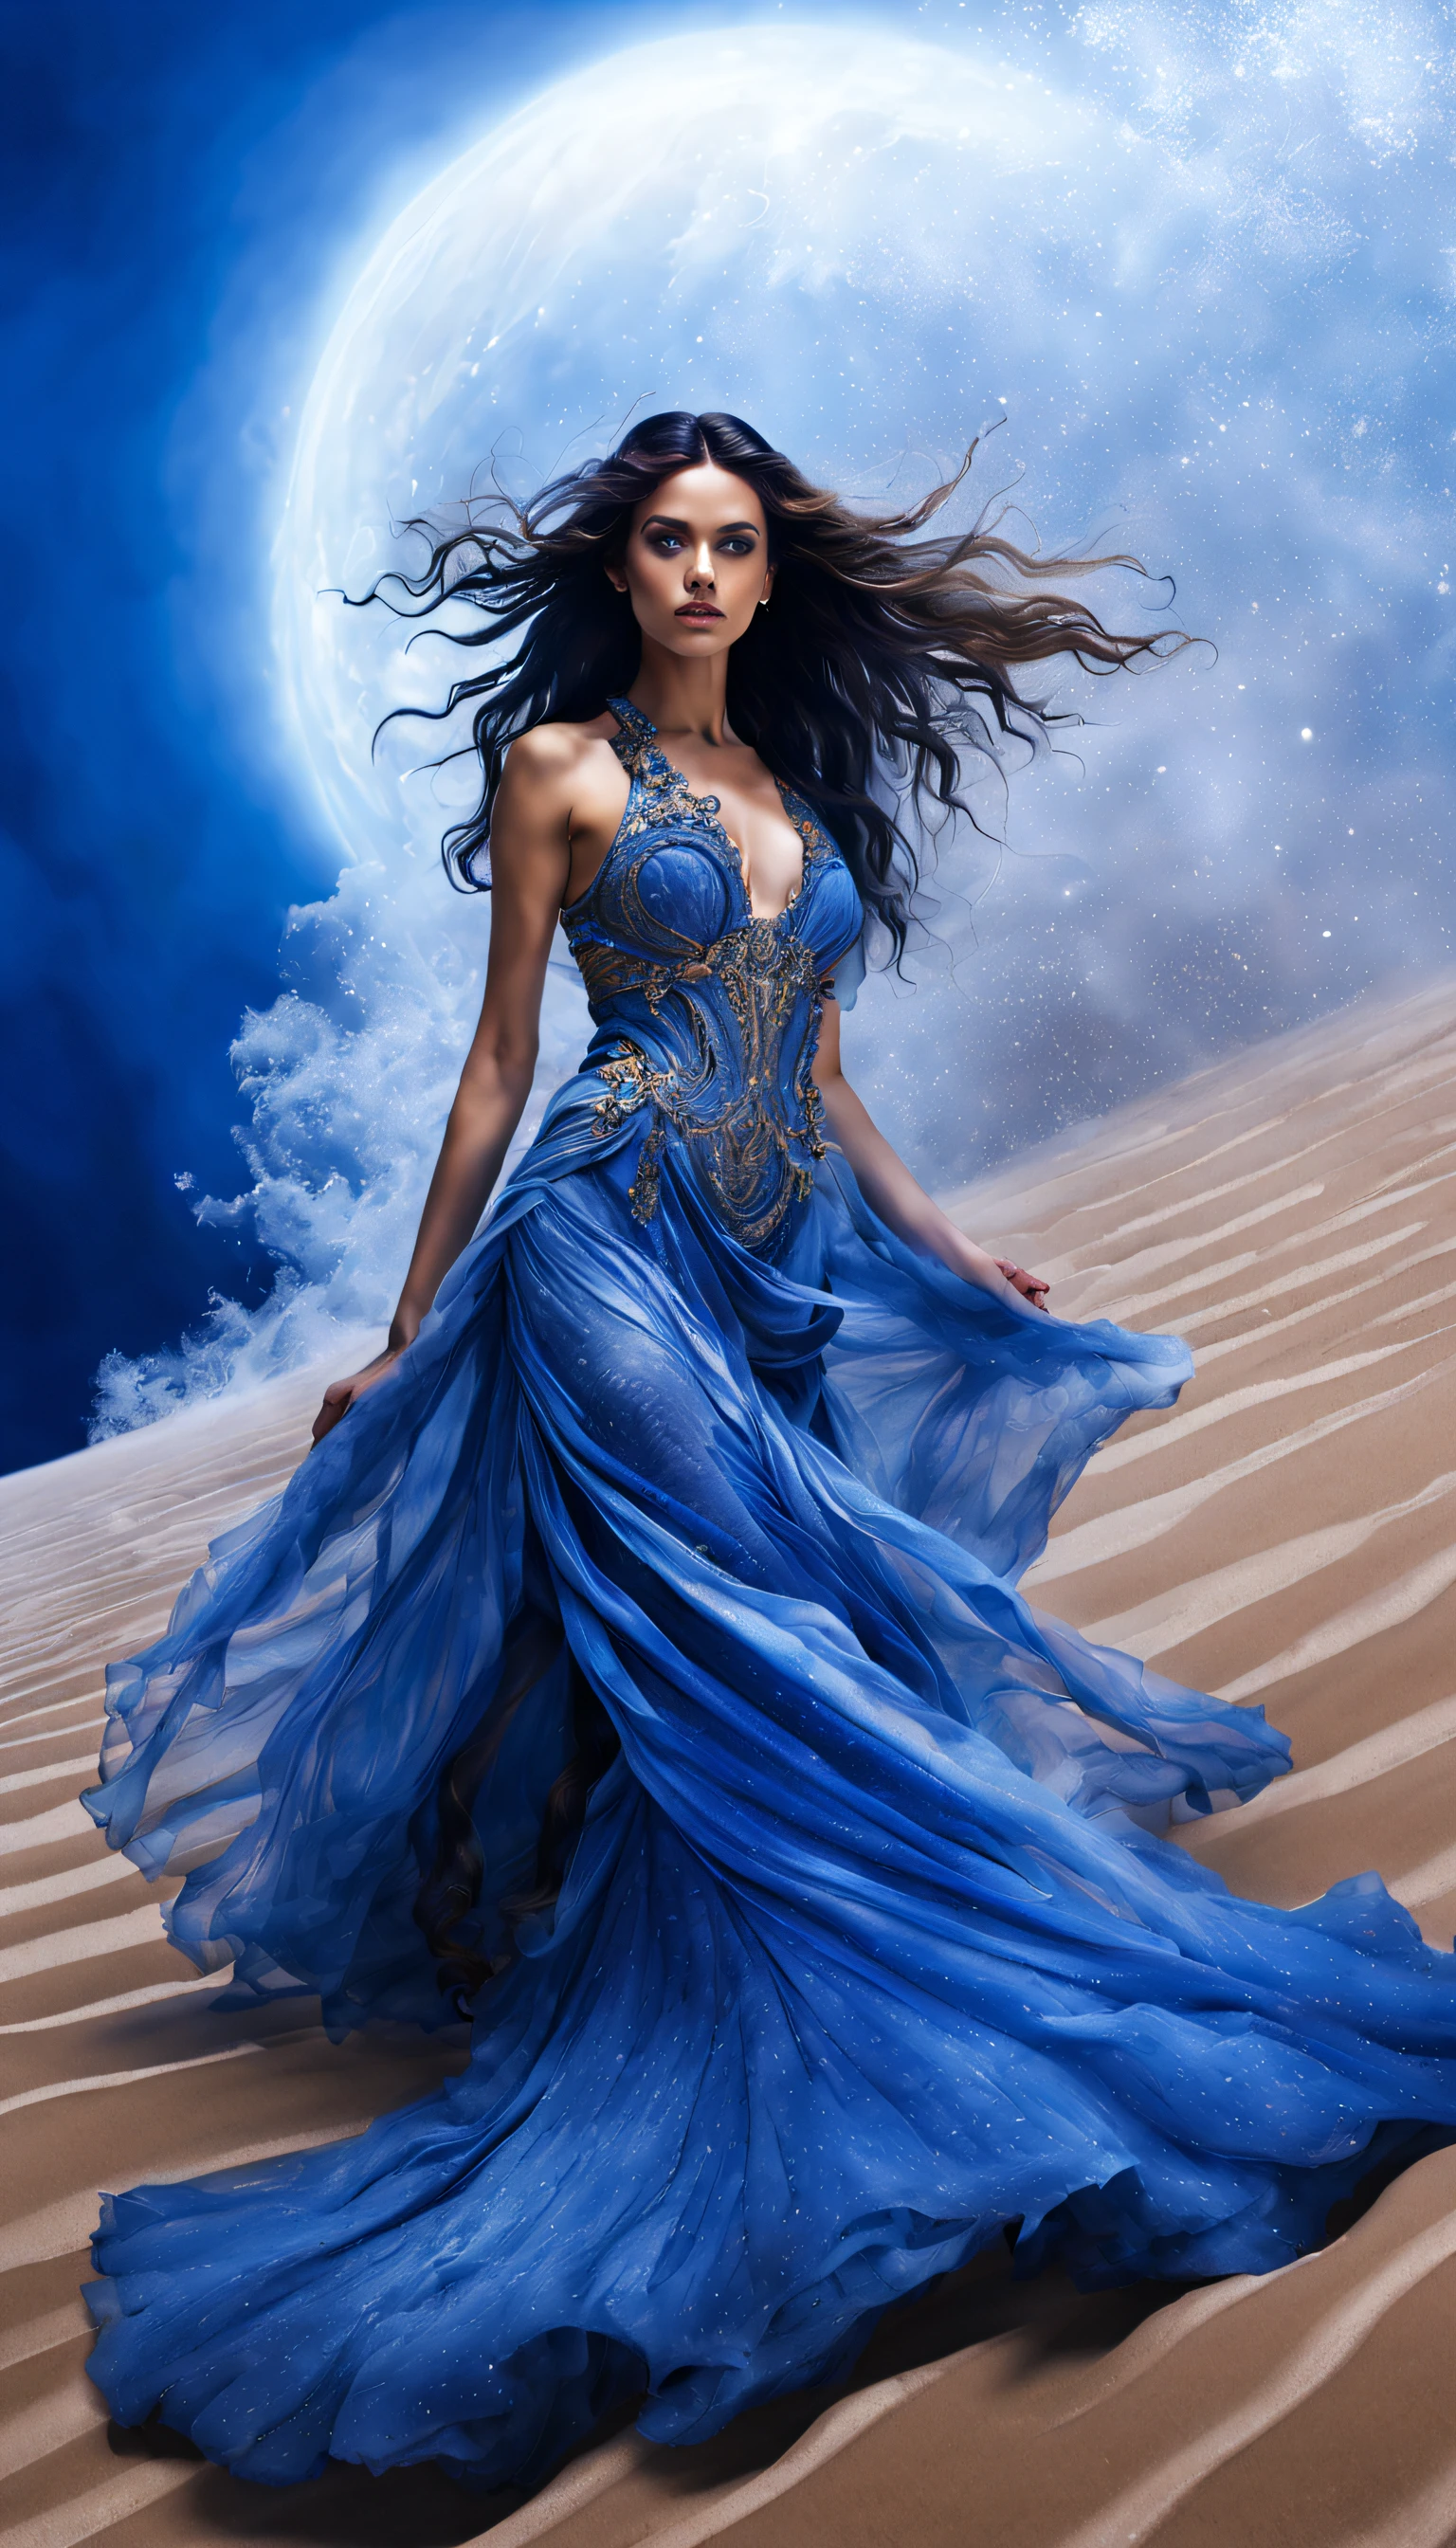 (砂漠に立つサファイアブルーのオーシャンオートクチュールを着た女性モデルの写真）,ハイファッション, 魔女の衣装の背景：木星，リーフ，砂と泡が渦巻いている，青い渦巻く砂と泡, 塵が泡のように渦巻く,
途方もなく長い髪, 長いまつ毛, 明るい瞳, , 投影インセット, ズームレイヤー, レイトレーシング, 神の光線, 超高解像度, 傑作, 網膜, 解剖学的に正しい, キメのある肌, 超詳細, 細部までこだわった, 高品質, 受賞歴, 最高品質, 高解像度, 8k